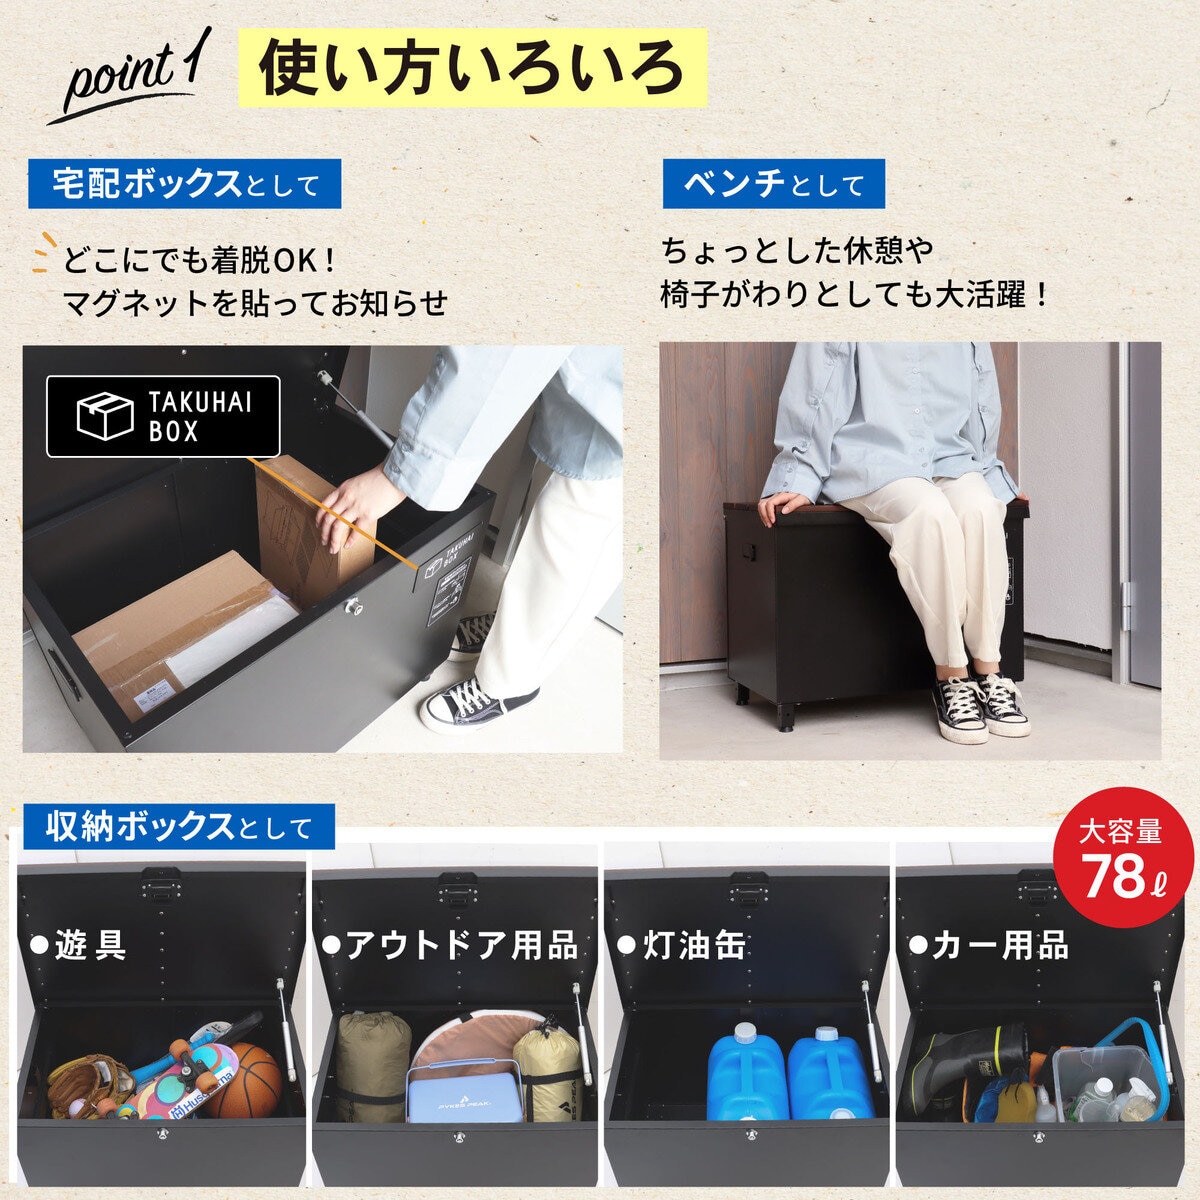 パイクスピーク ベンチ型宅配ボックス（クルミ） P0144 | Costco Japan